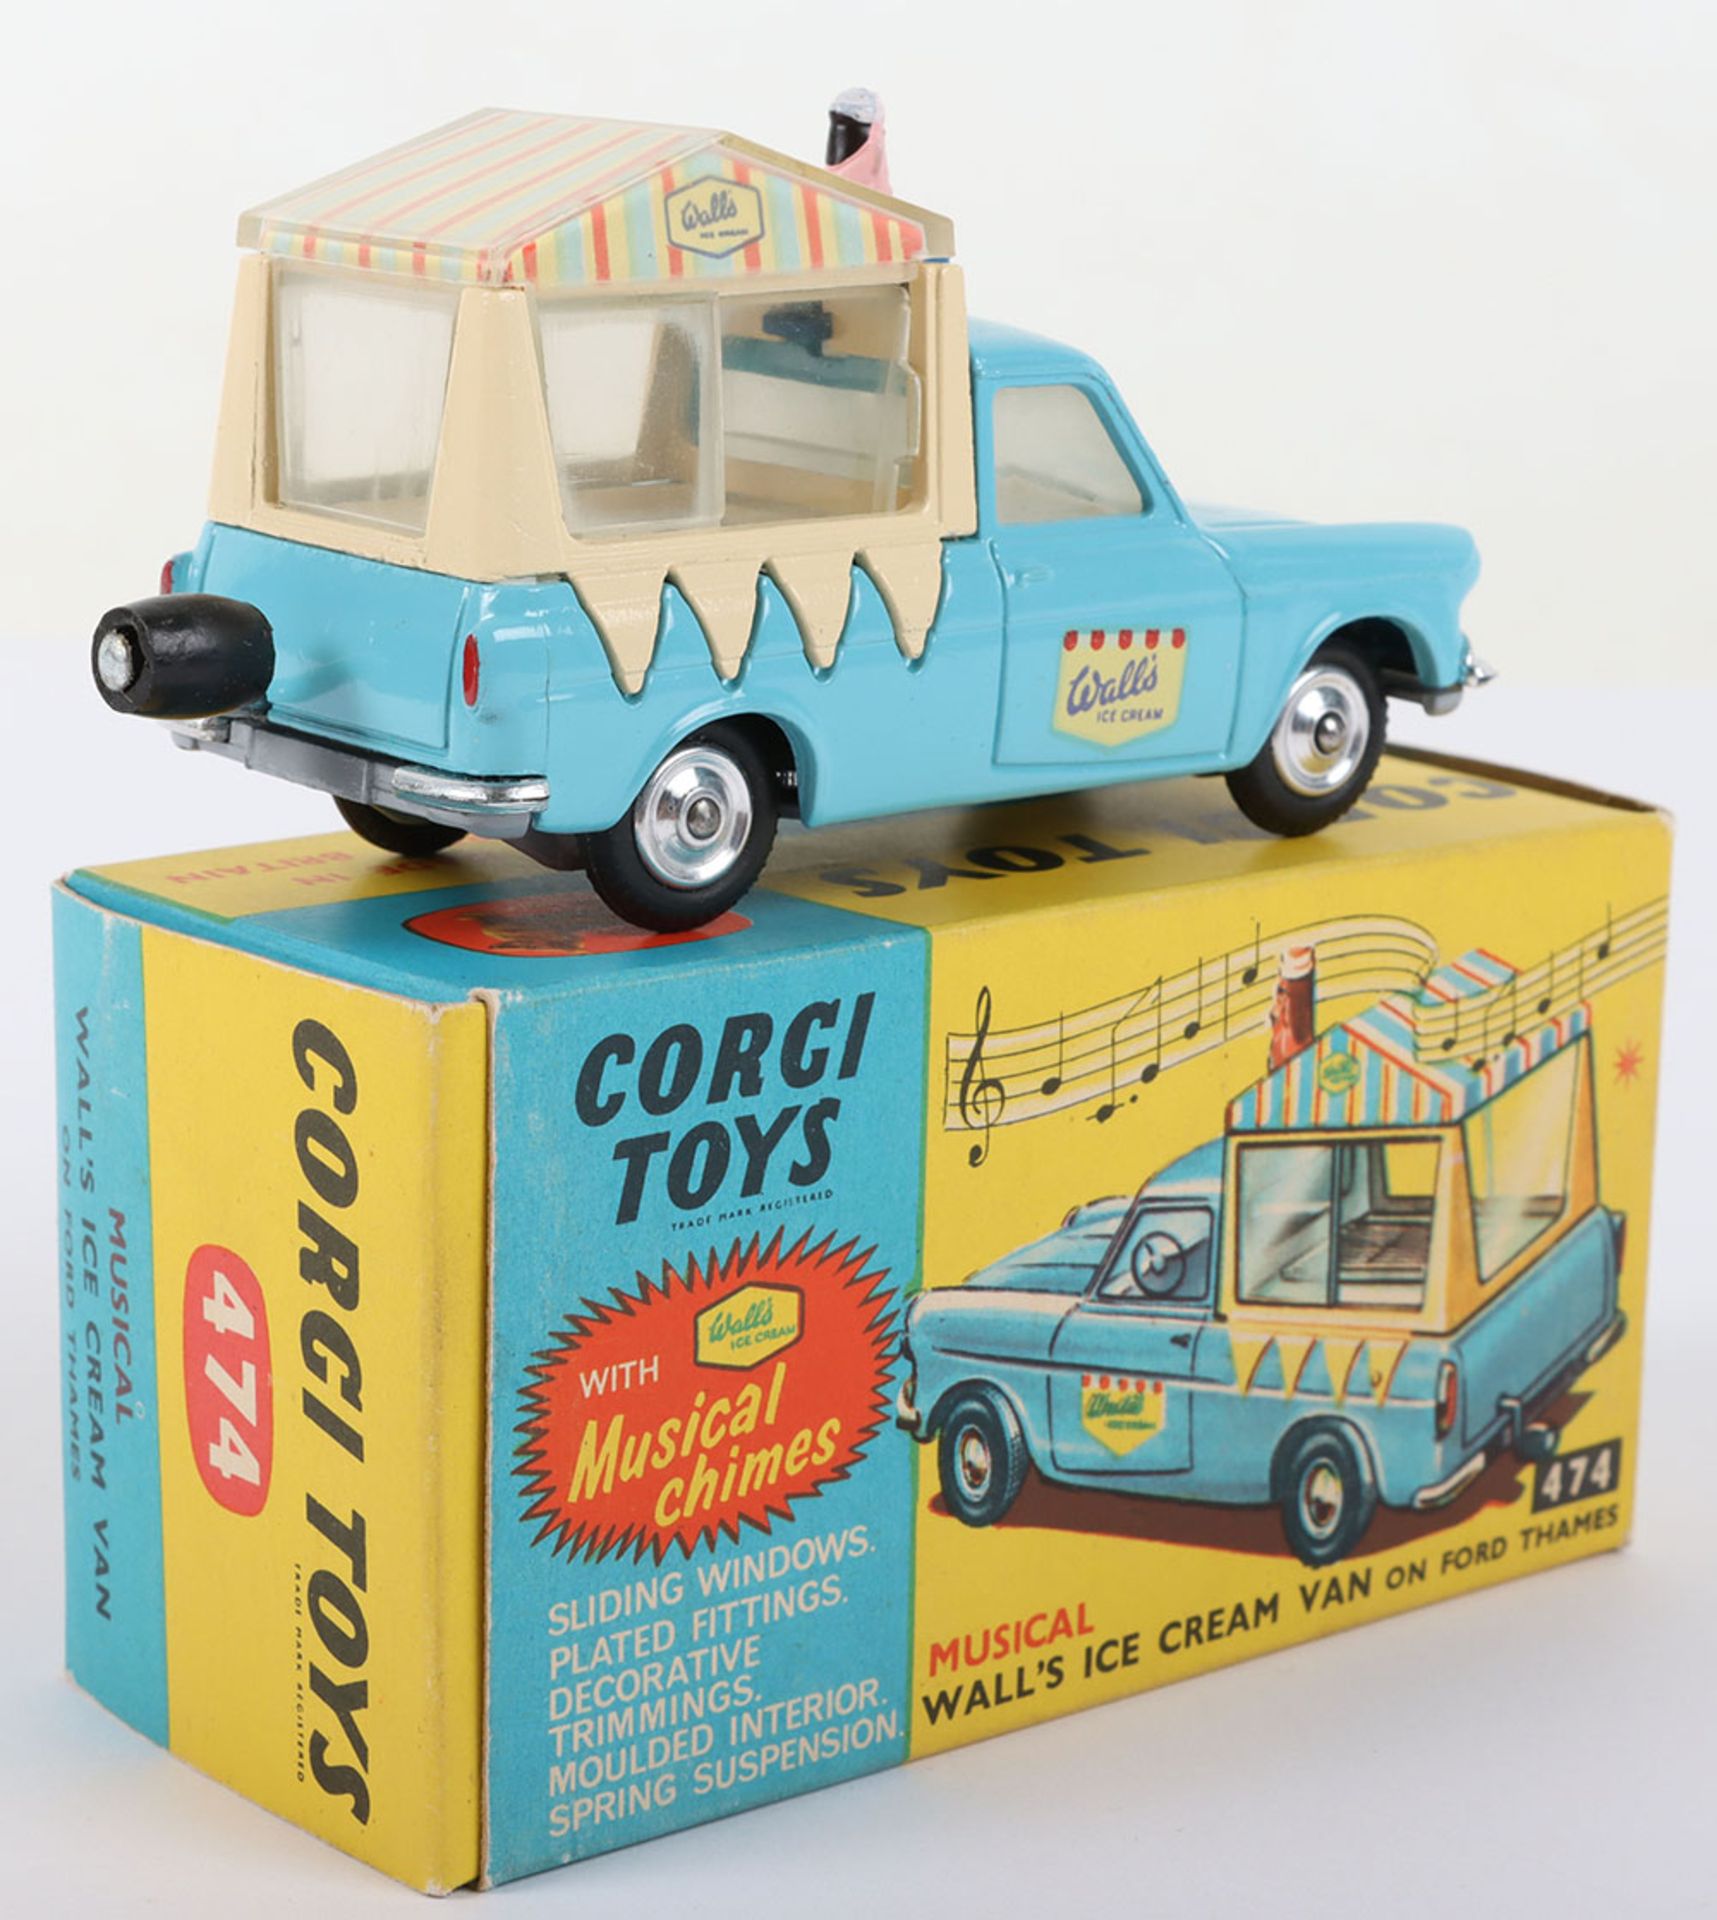 Corgi Toys Corgi Toys 474 Musical Walls Ice Cream Van on Ford Thames - Bild 3 aus 7